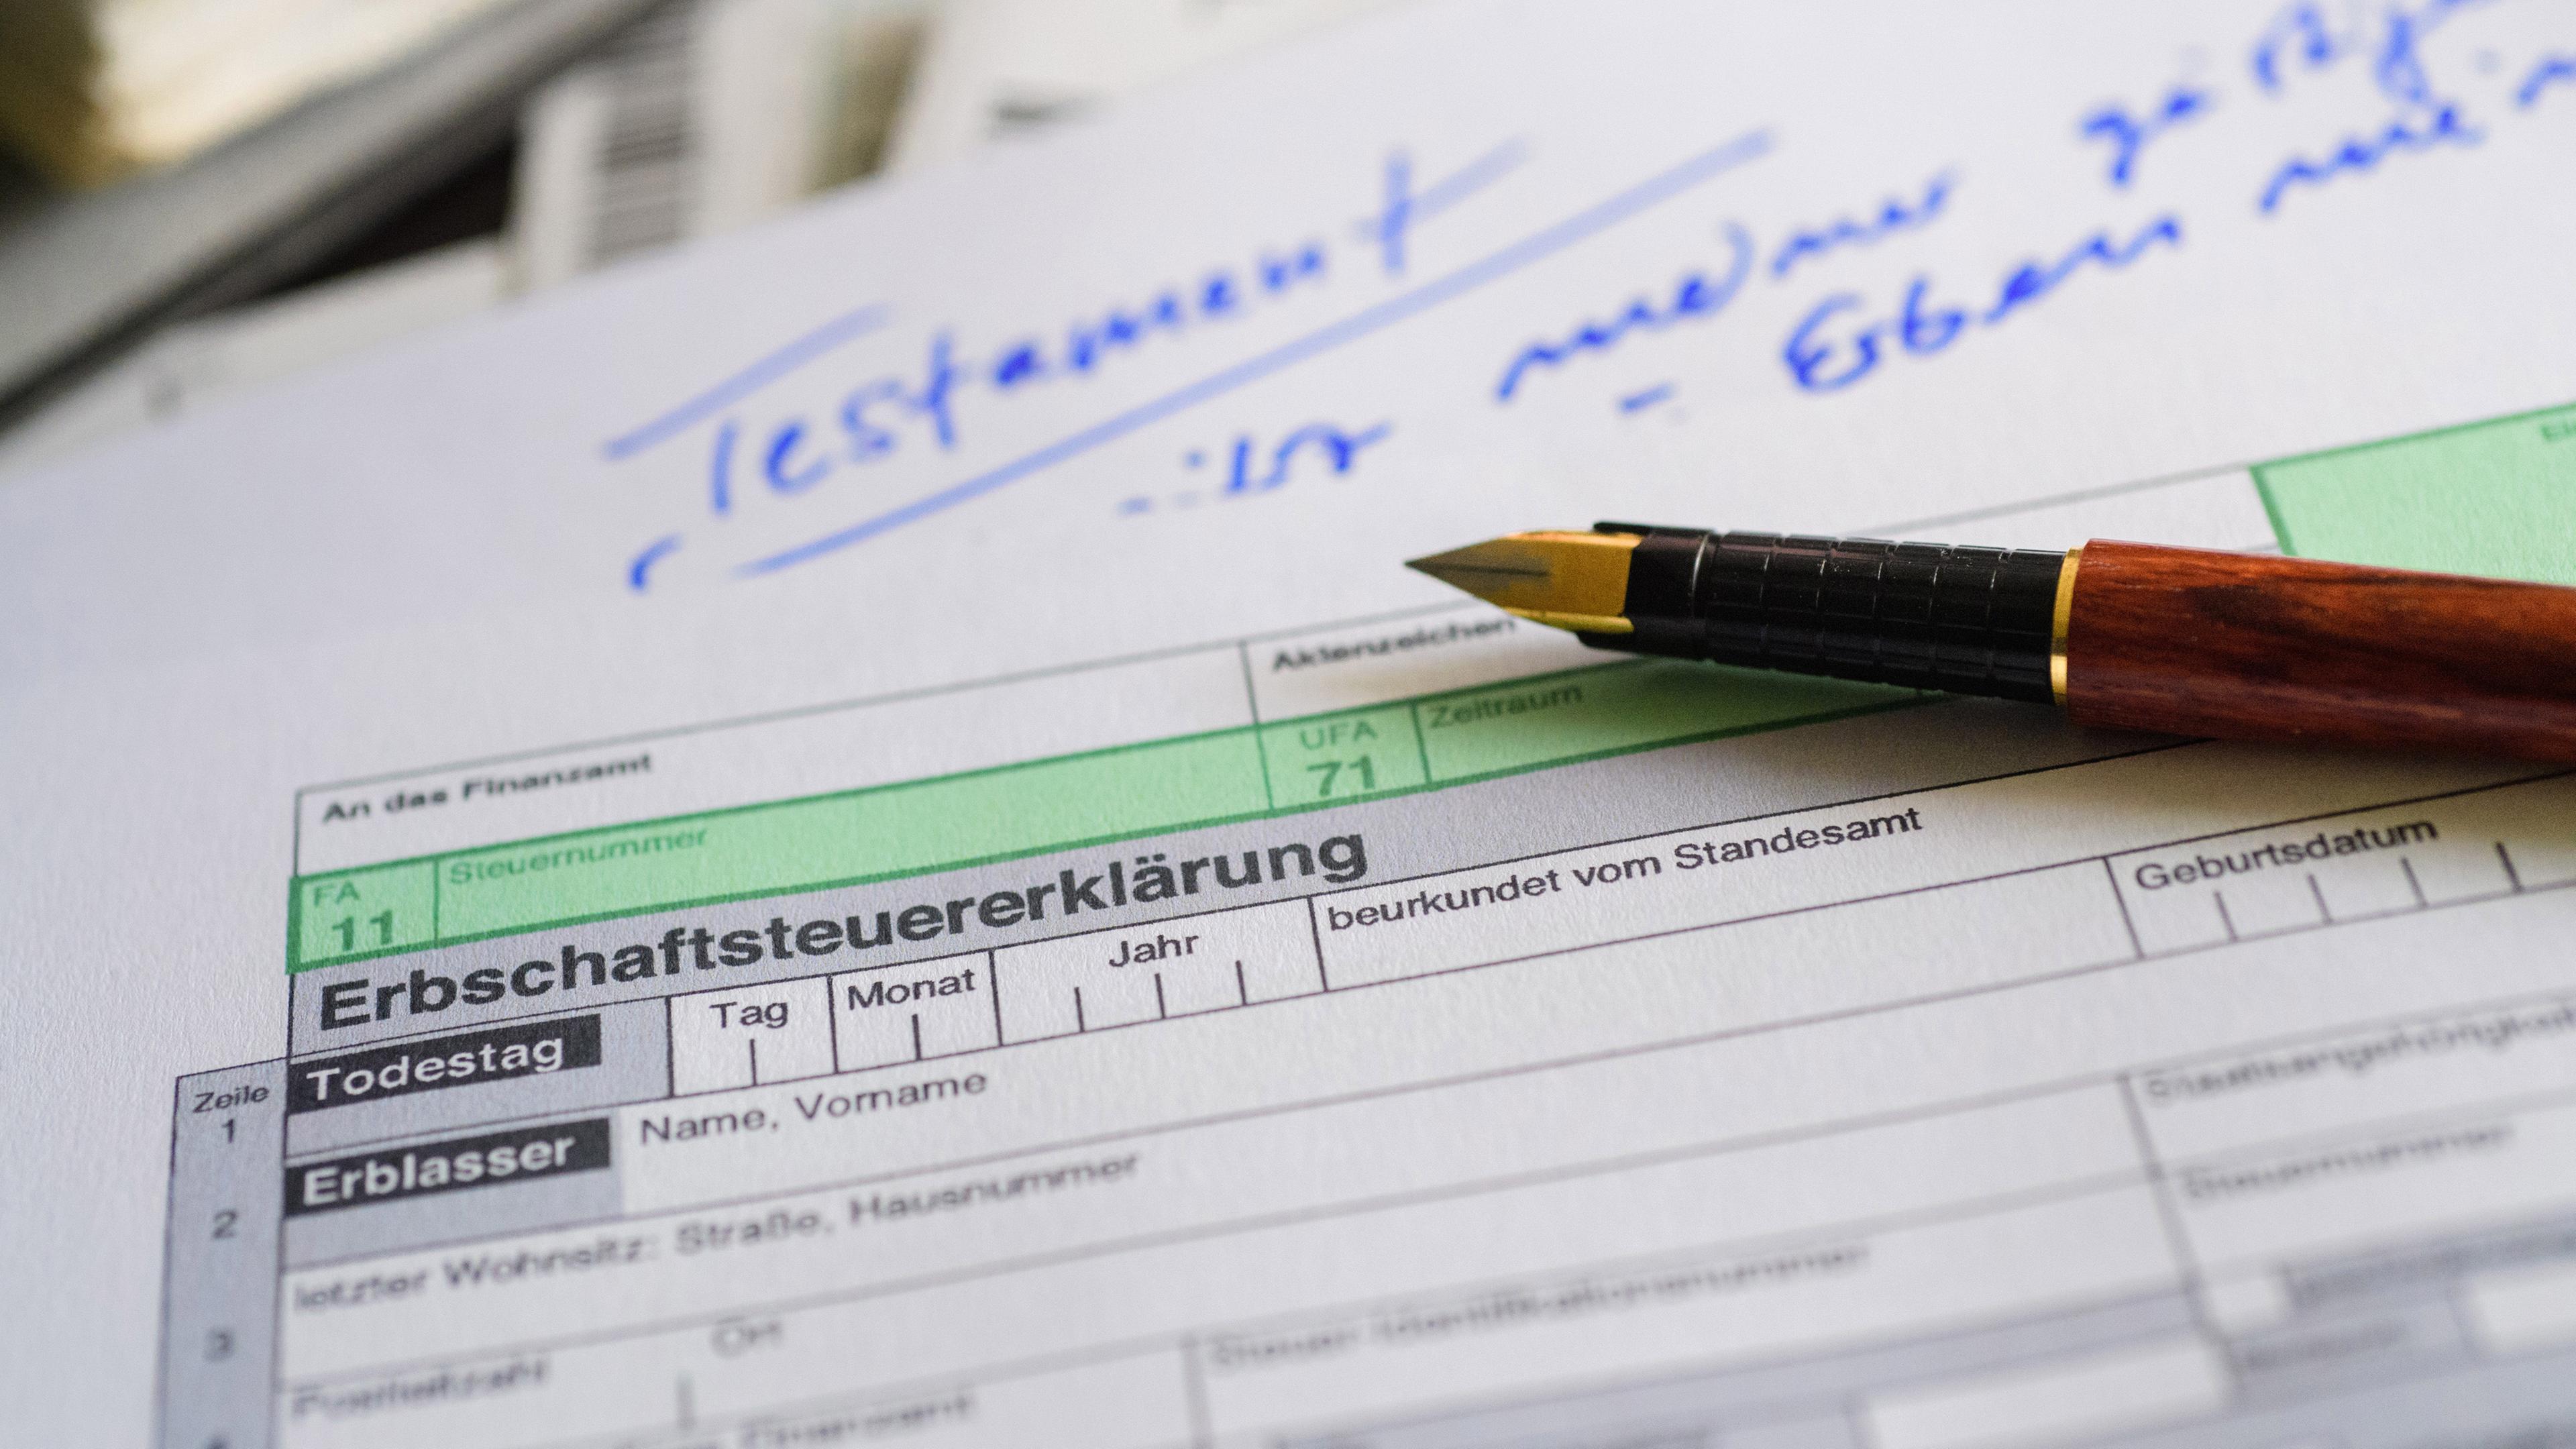 Ein Formular für die Erbschaftsteuererklärung sowie Stift und Testament liegen auf einem Tisch.